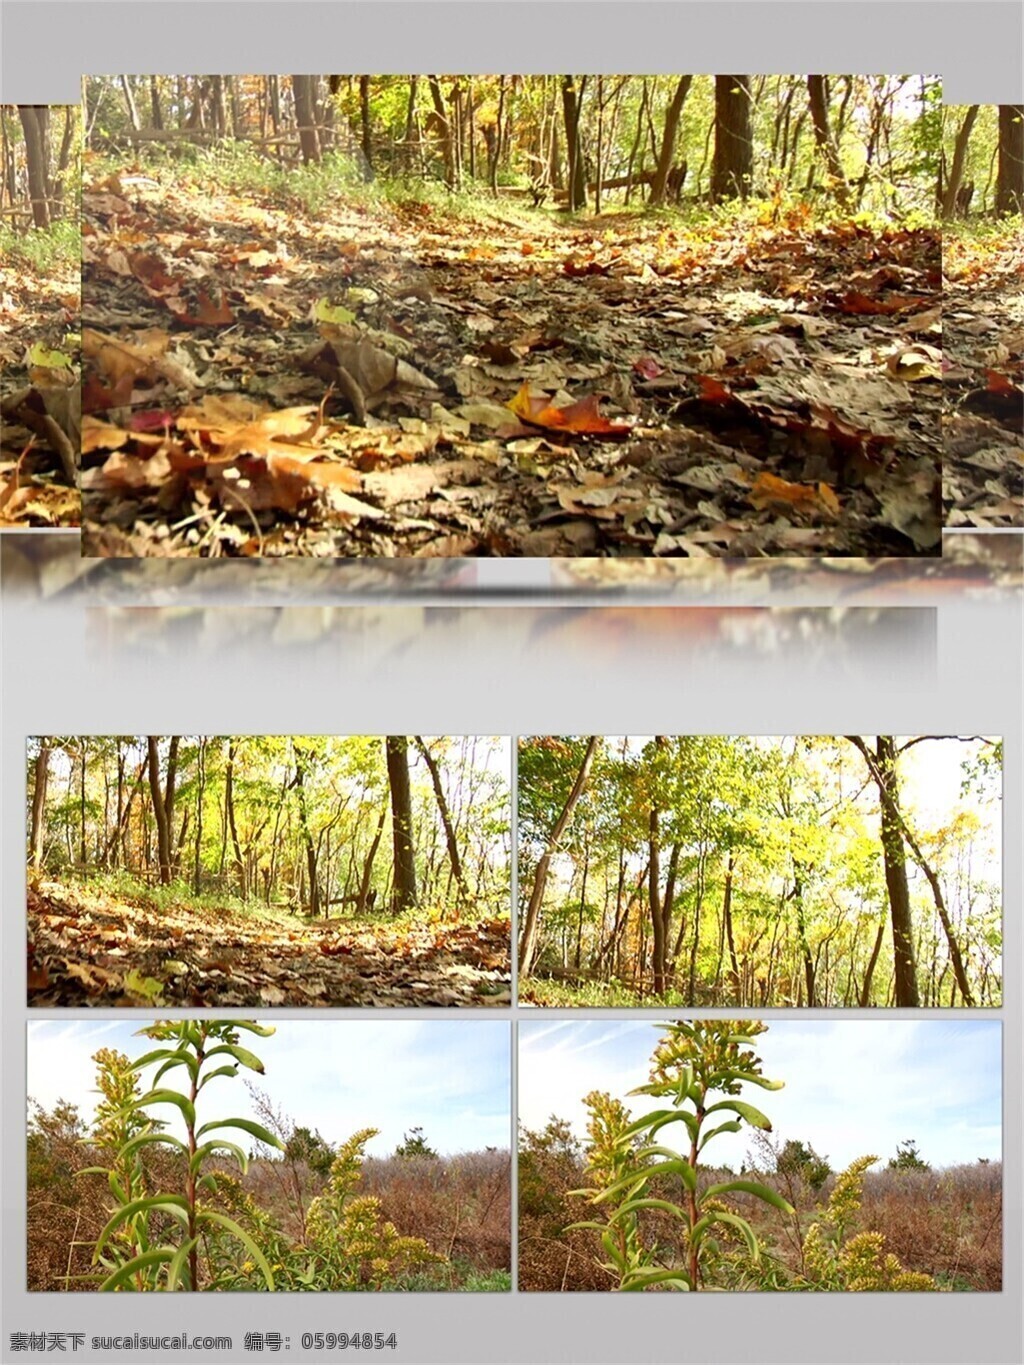 大自然 森林公园 树叶 满地 视频 落叶 树木 树林 植物 绿叶 枯叶 植被 自然环境 生态